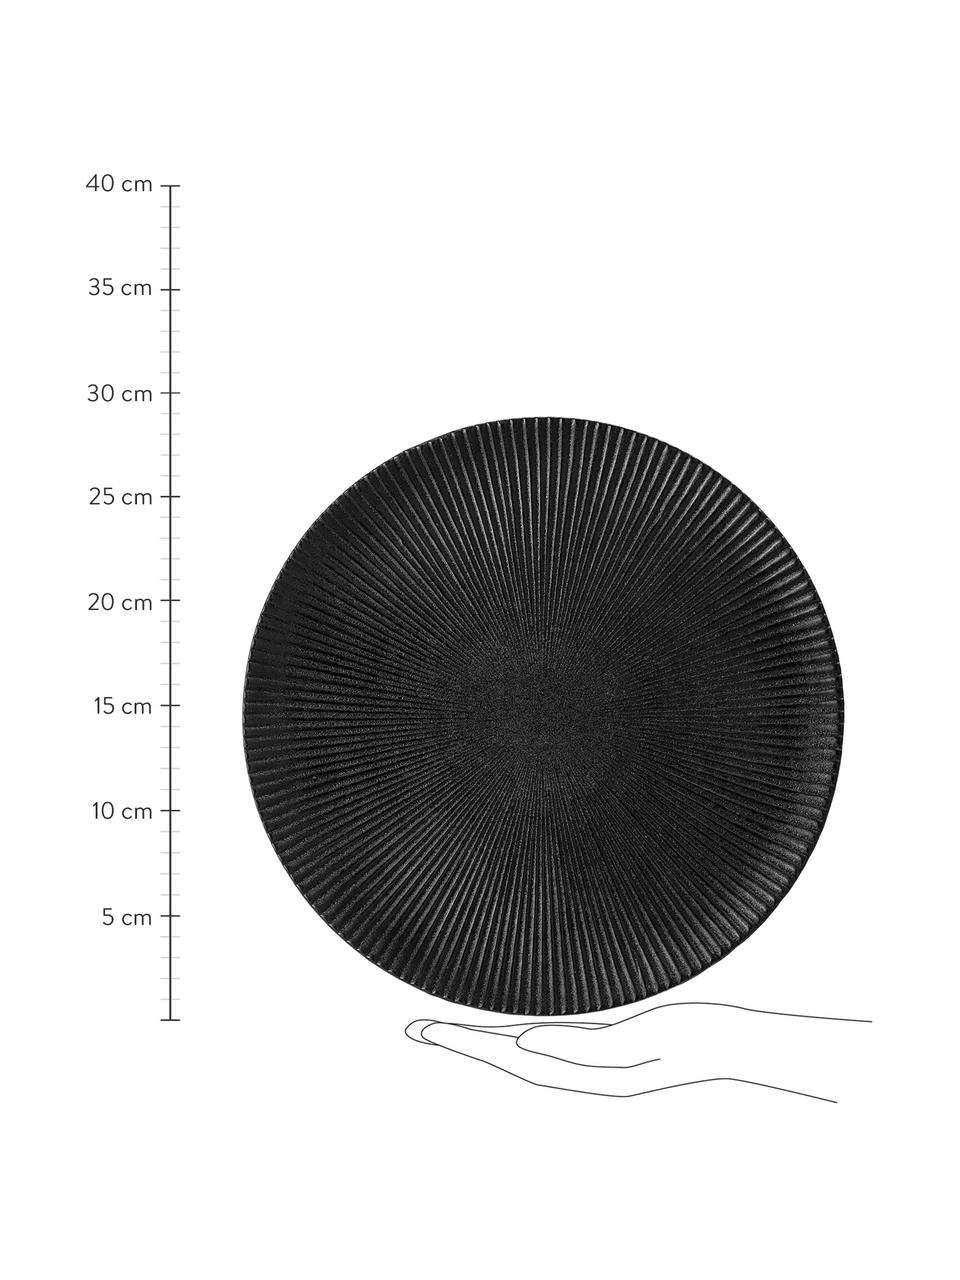 Dinerbord Neri met groefstructuur in mat zwart, Keramiek
Met groefstructuur en licht ruw oppervlak., Zwart, Ø 29 cm